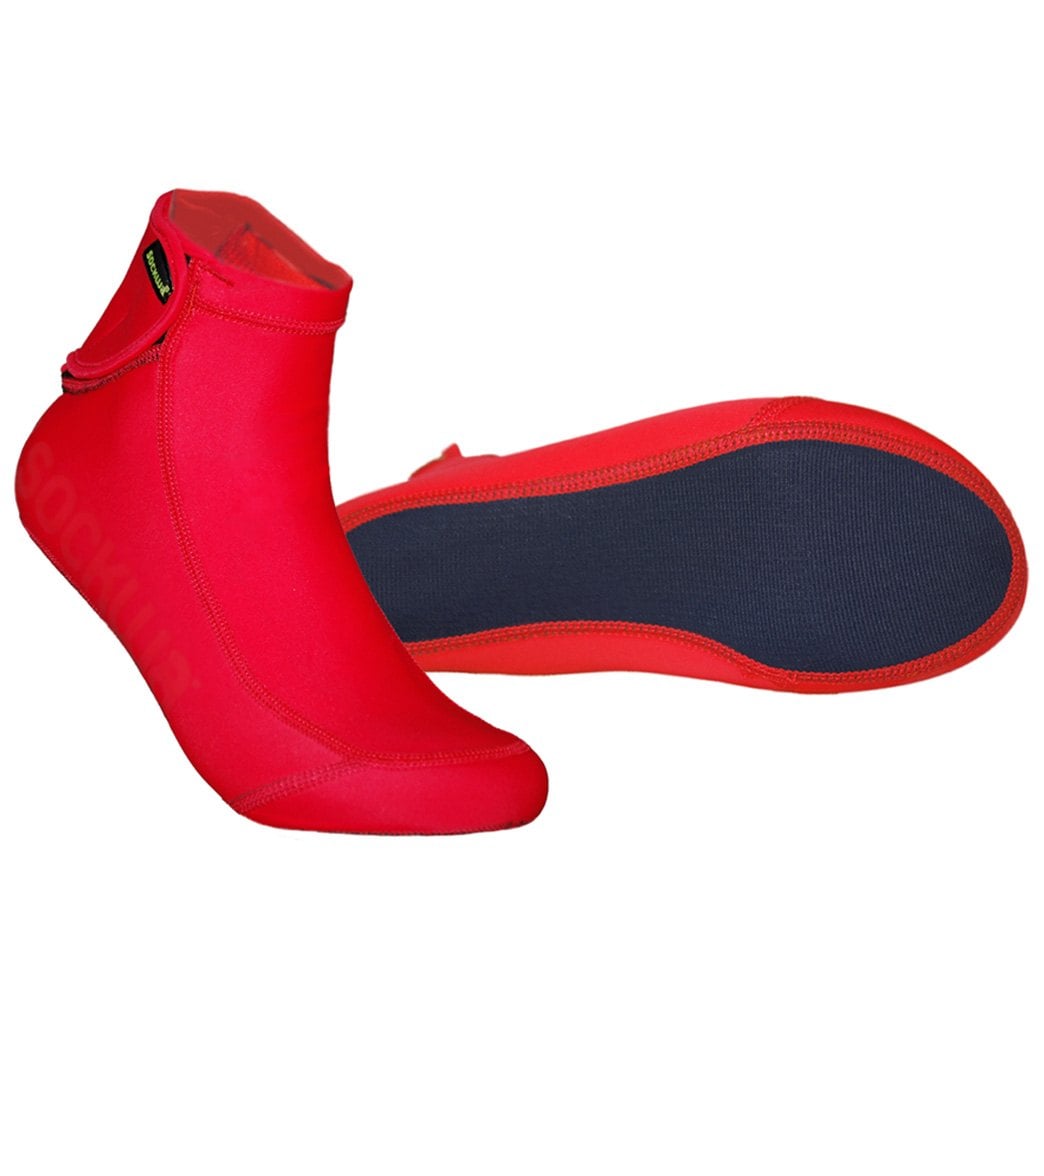 Sockwa Water Shoes Playa Hi Aqua Socks - Red W7/M6 - Swimoutlet.com